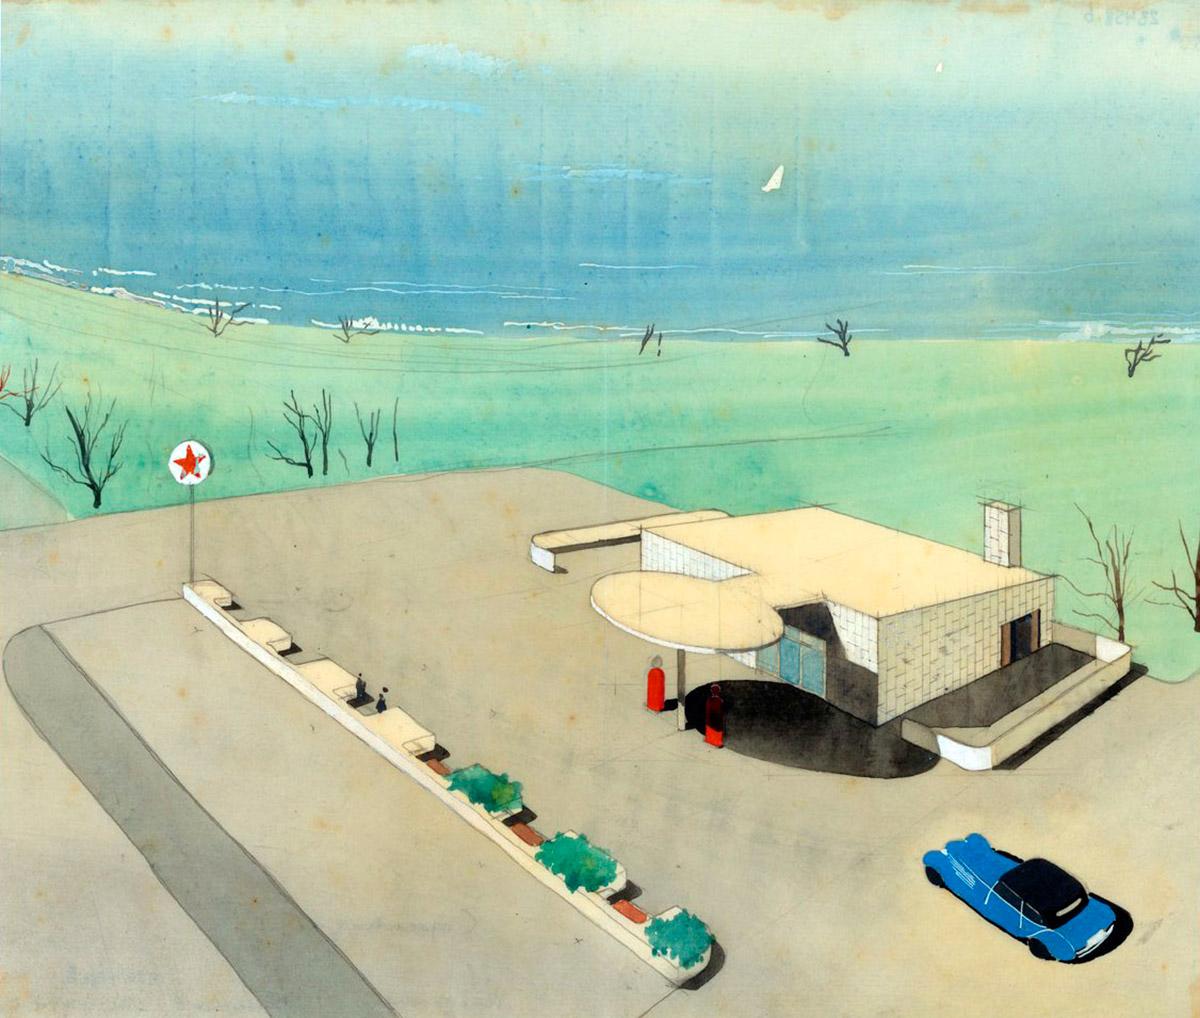 Perspectiva en acuarela del proyecto para la estación de servicio de la compañía ‘Texaco’ proyectada por Arne Jacobsen en 1937.